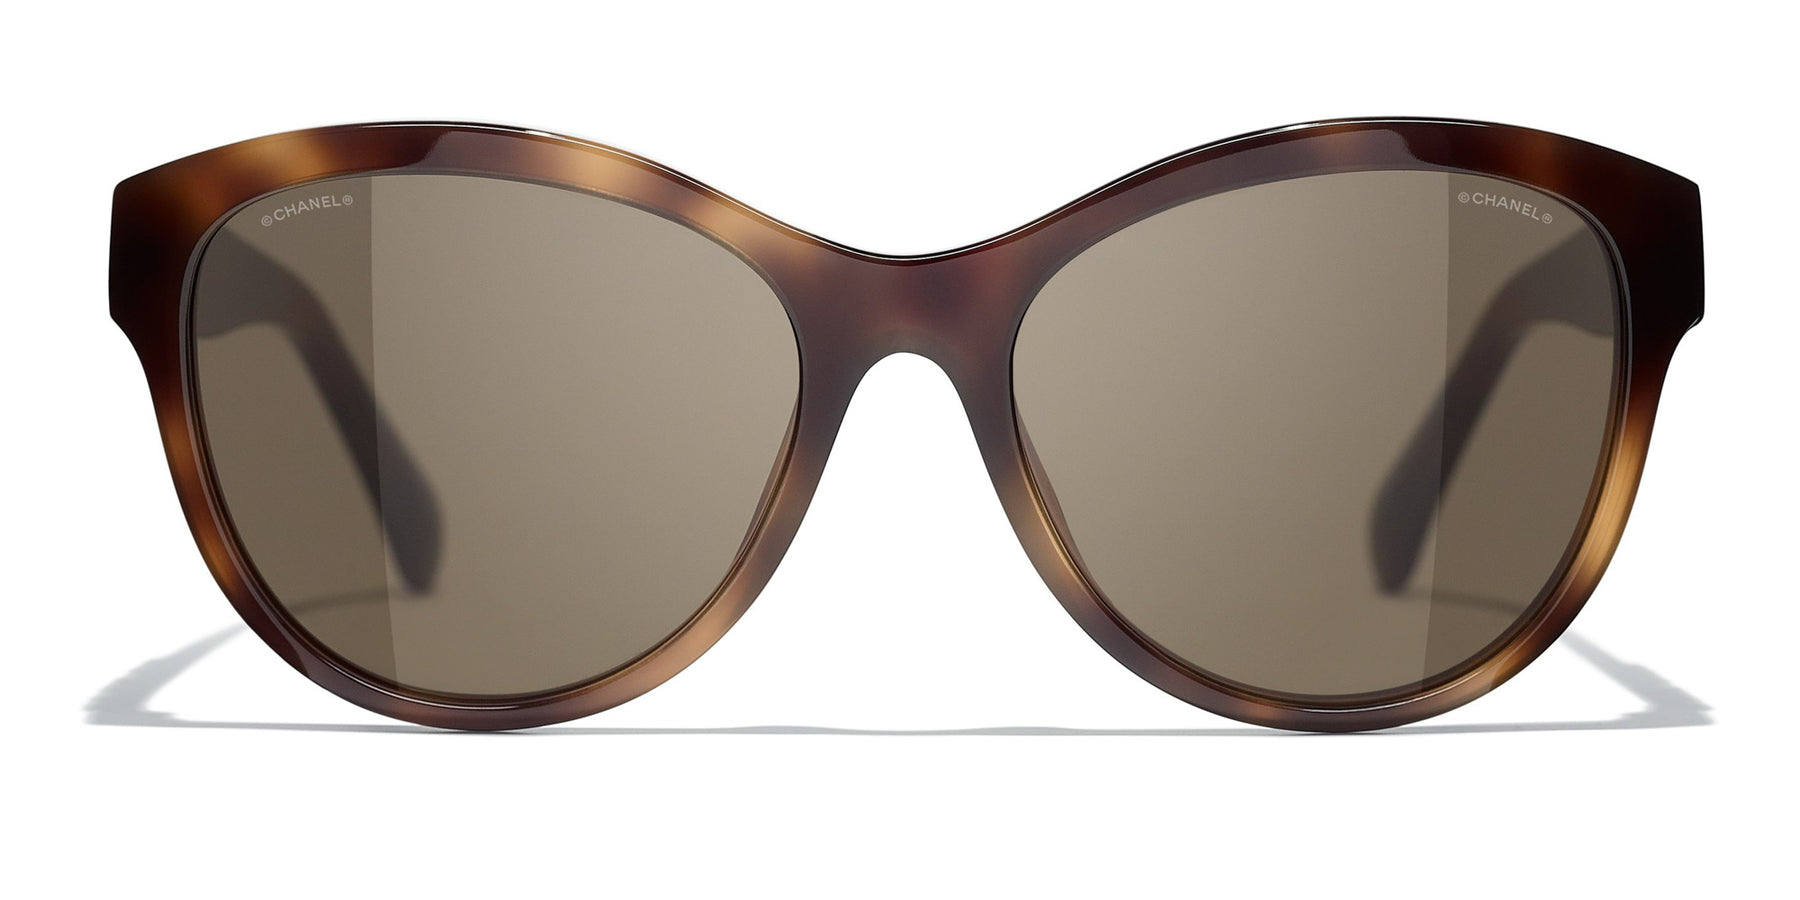 Chanel 5458 1661/3 Butterfly Sunglasses Havana 55mm